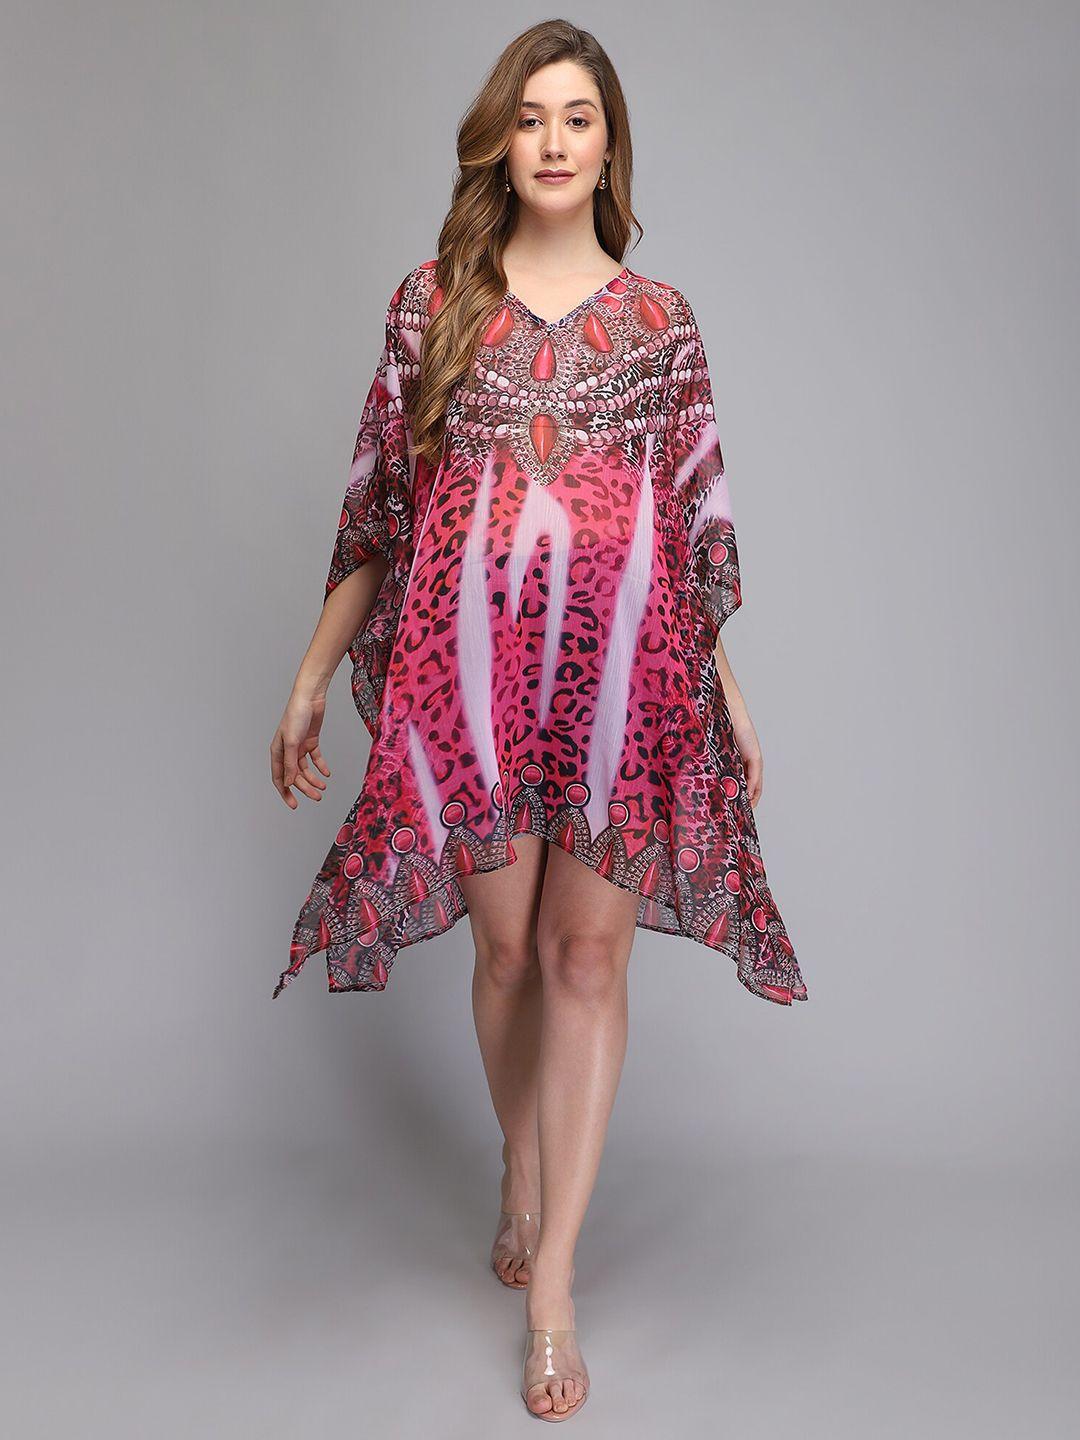 aditi wasan pink abstract printed chiffon kaftan midi dress